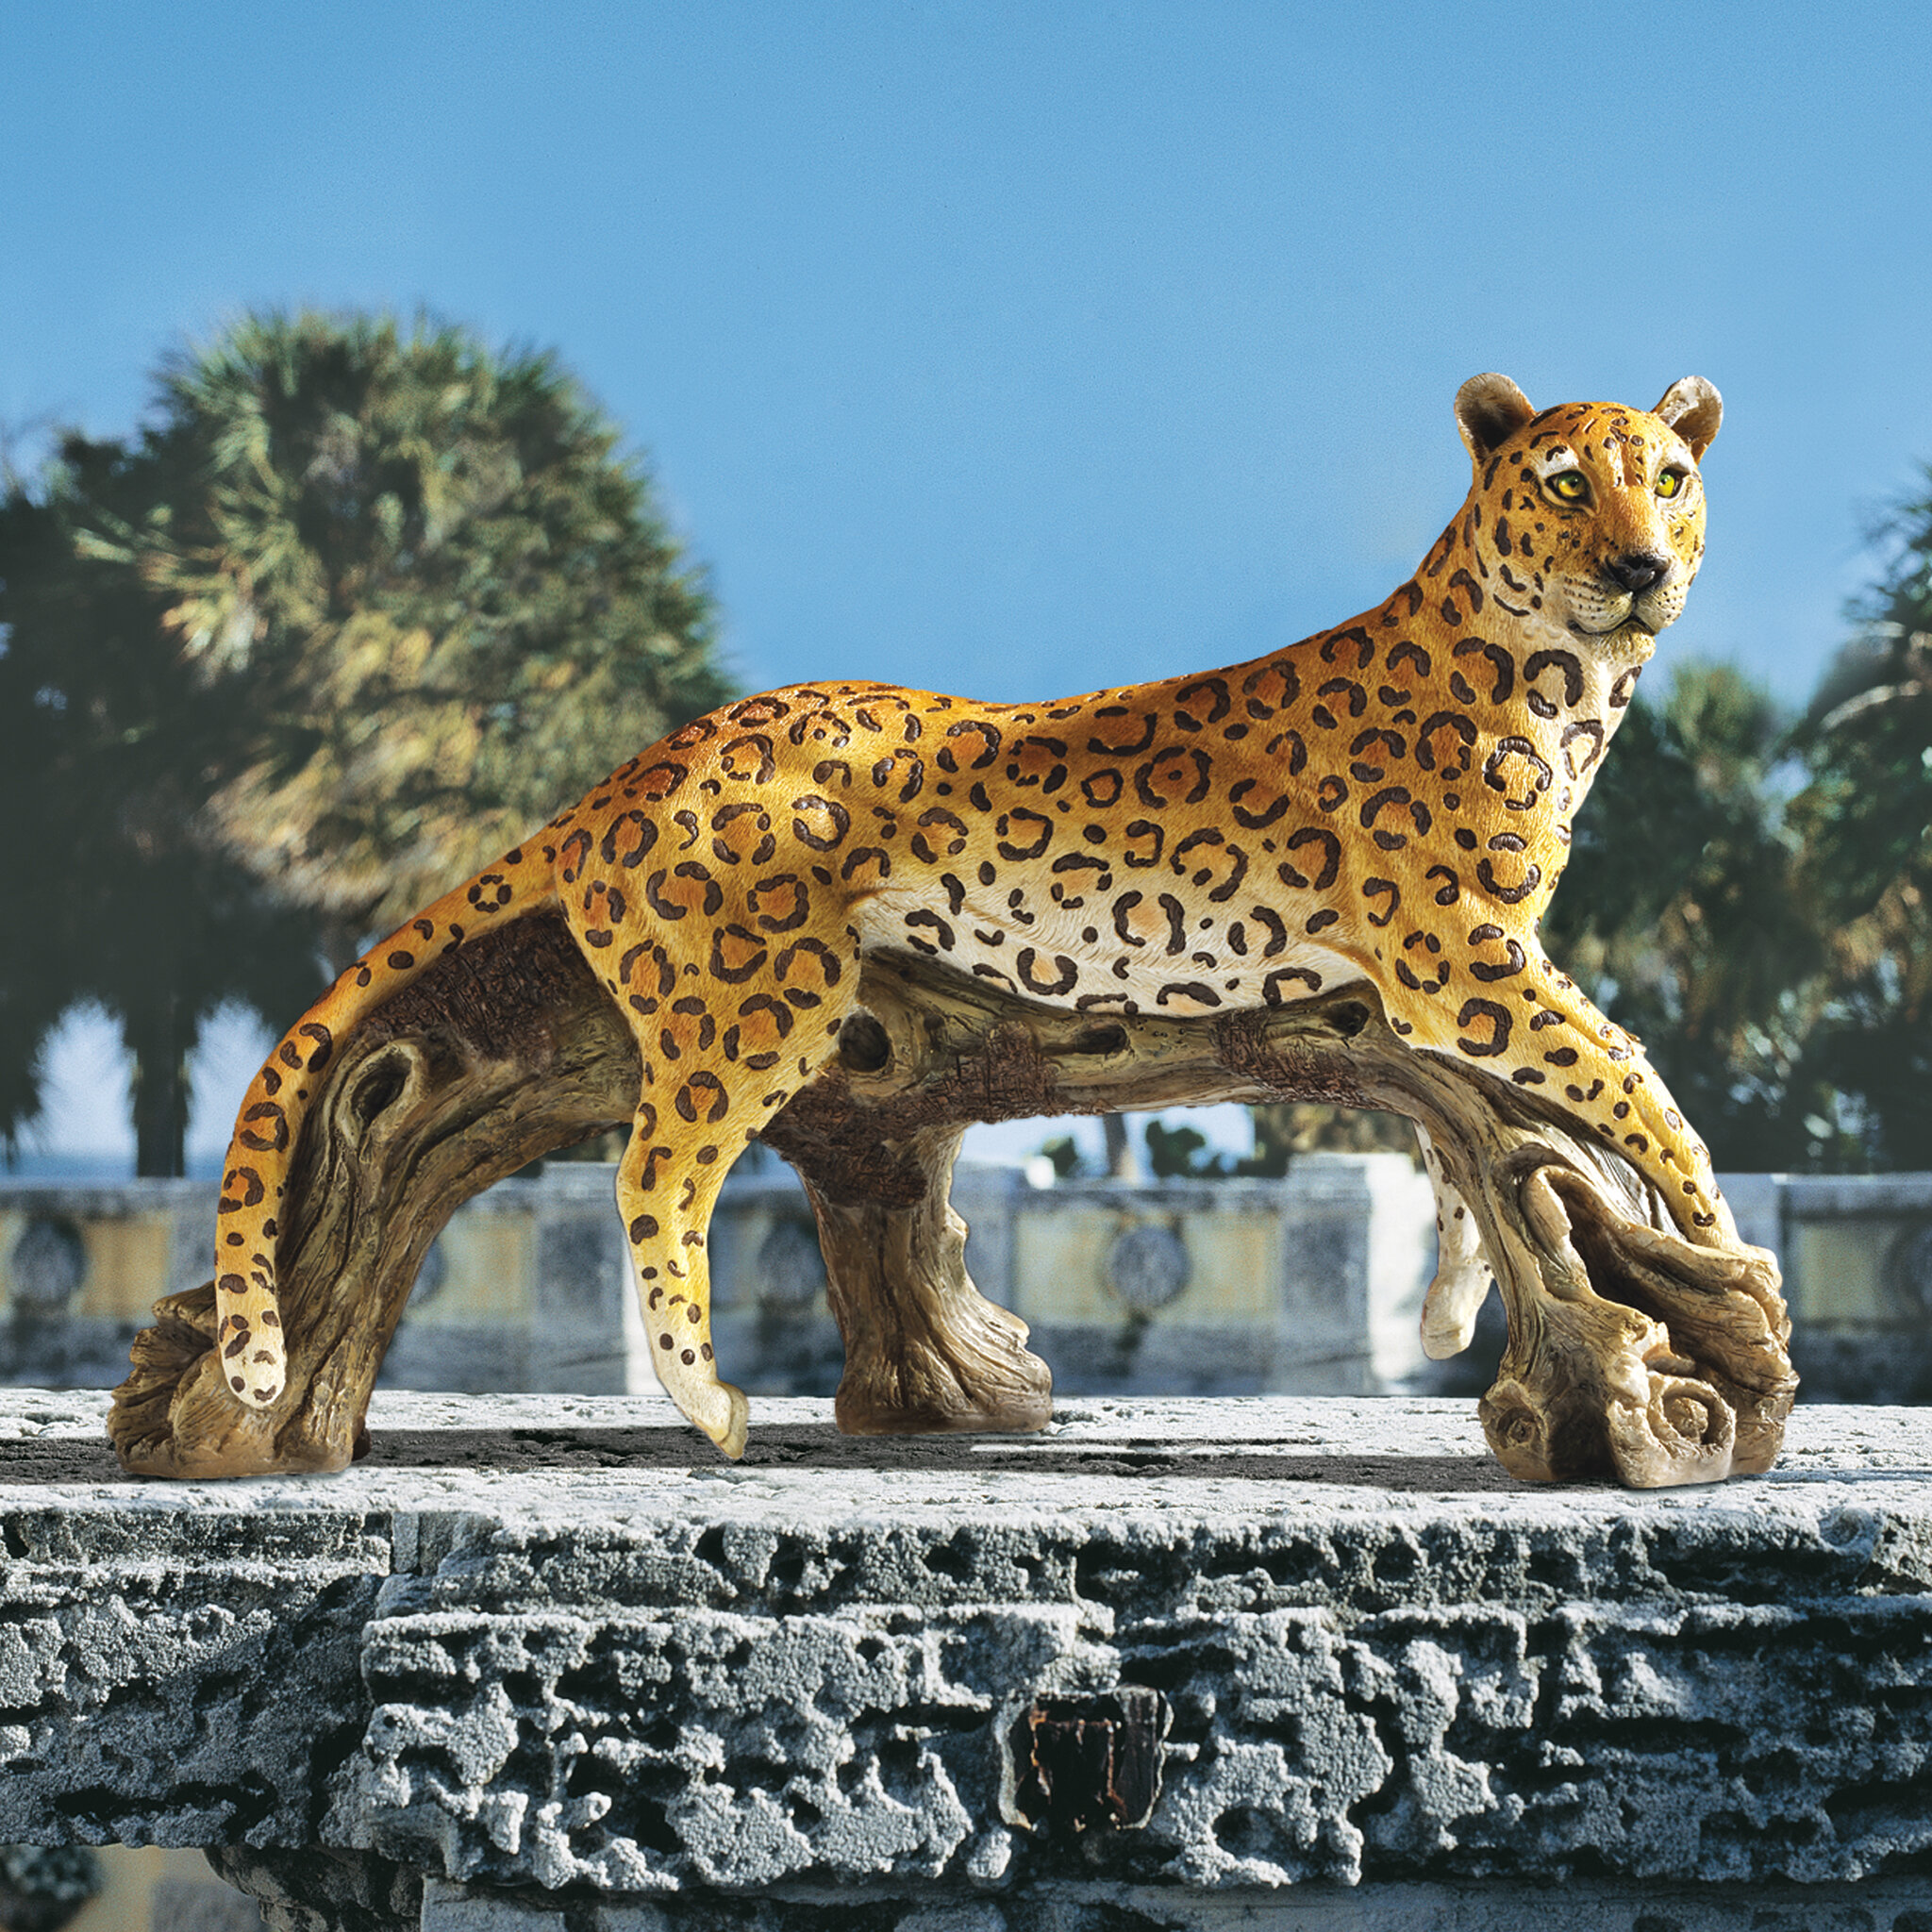 Baby Cheetah Statue